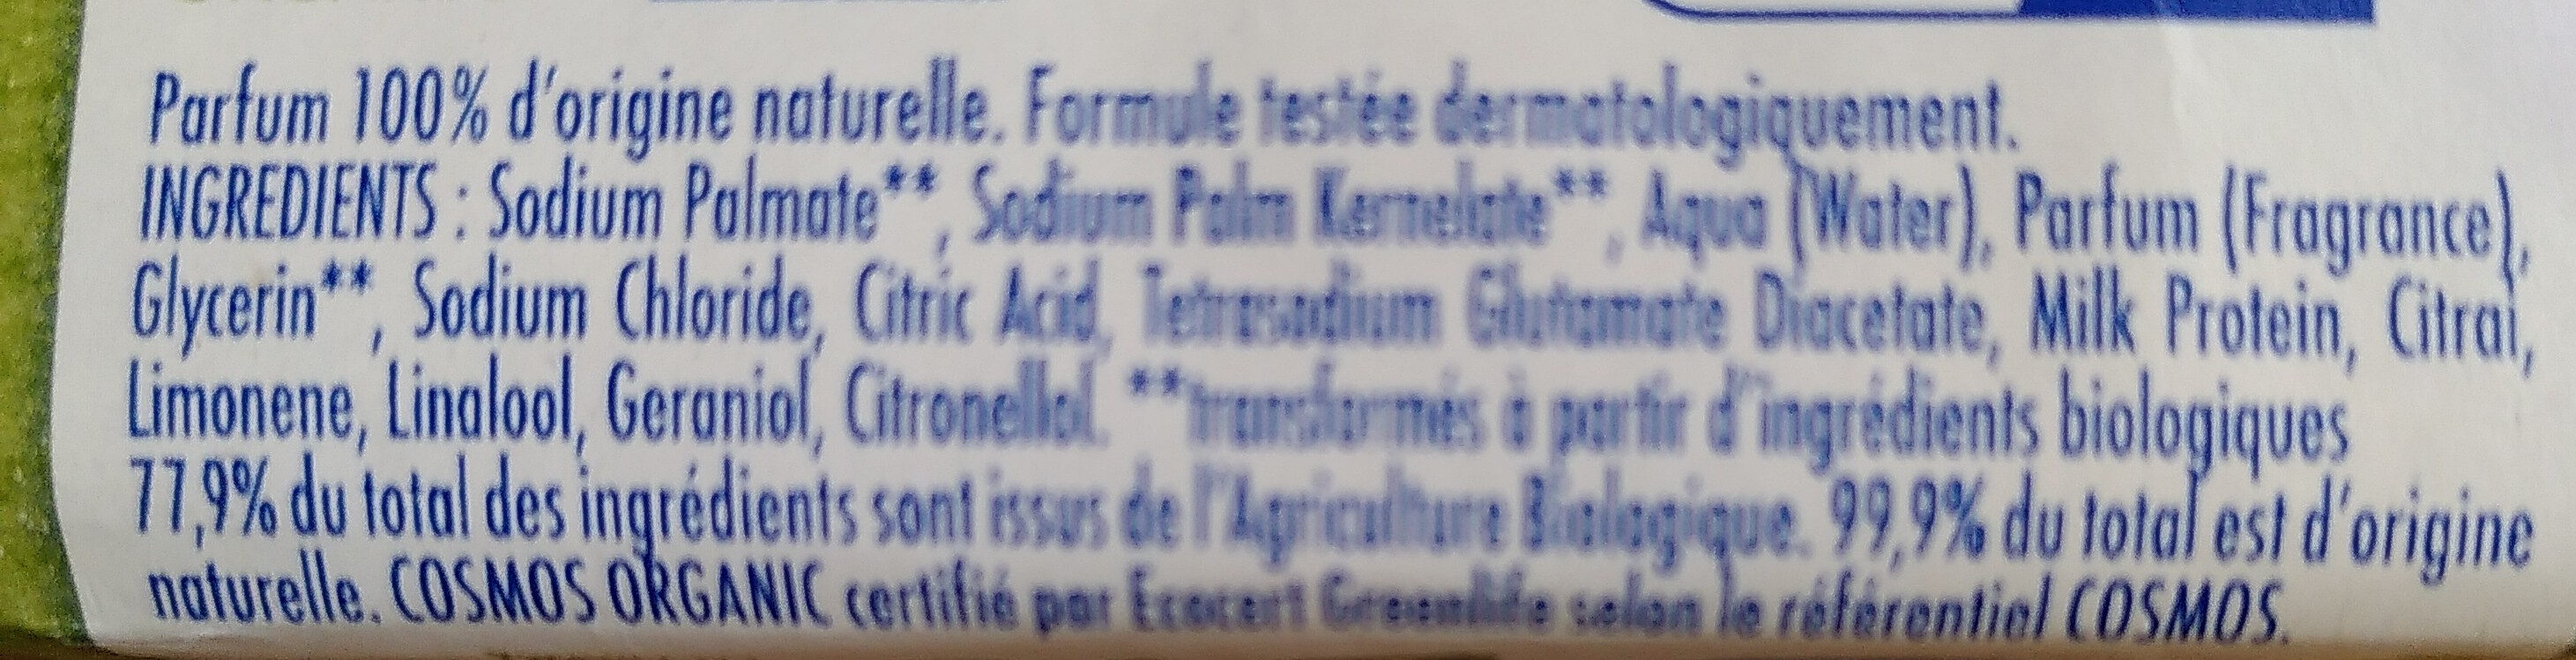 Msv pdt bio citron 100g - Ingredientes - fr